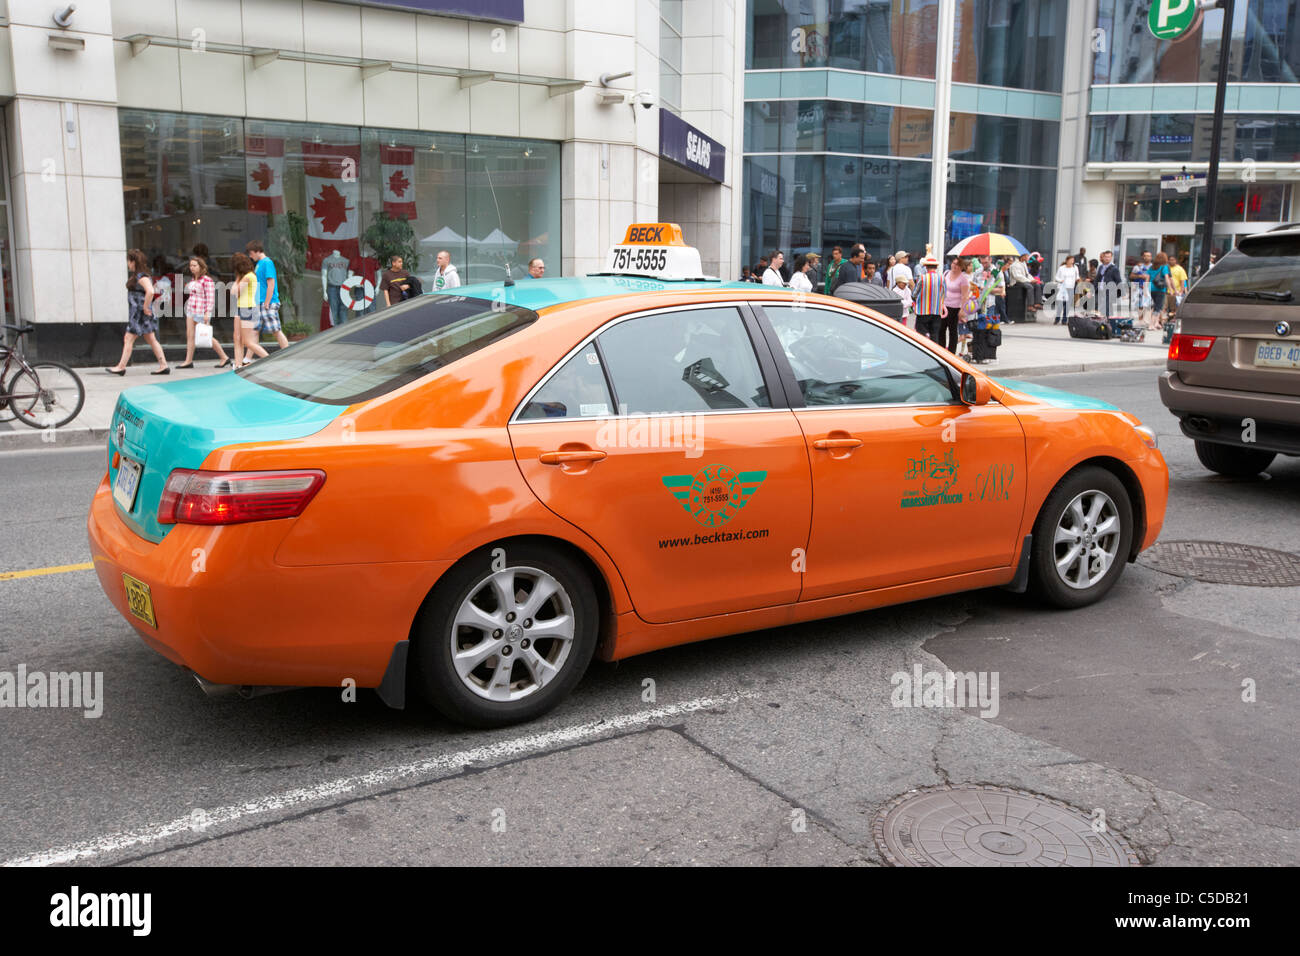 downtown beck taxi cab toronto ontario canada Stock Photo